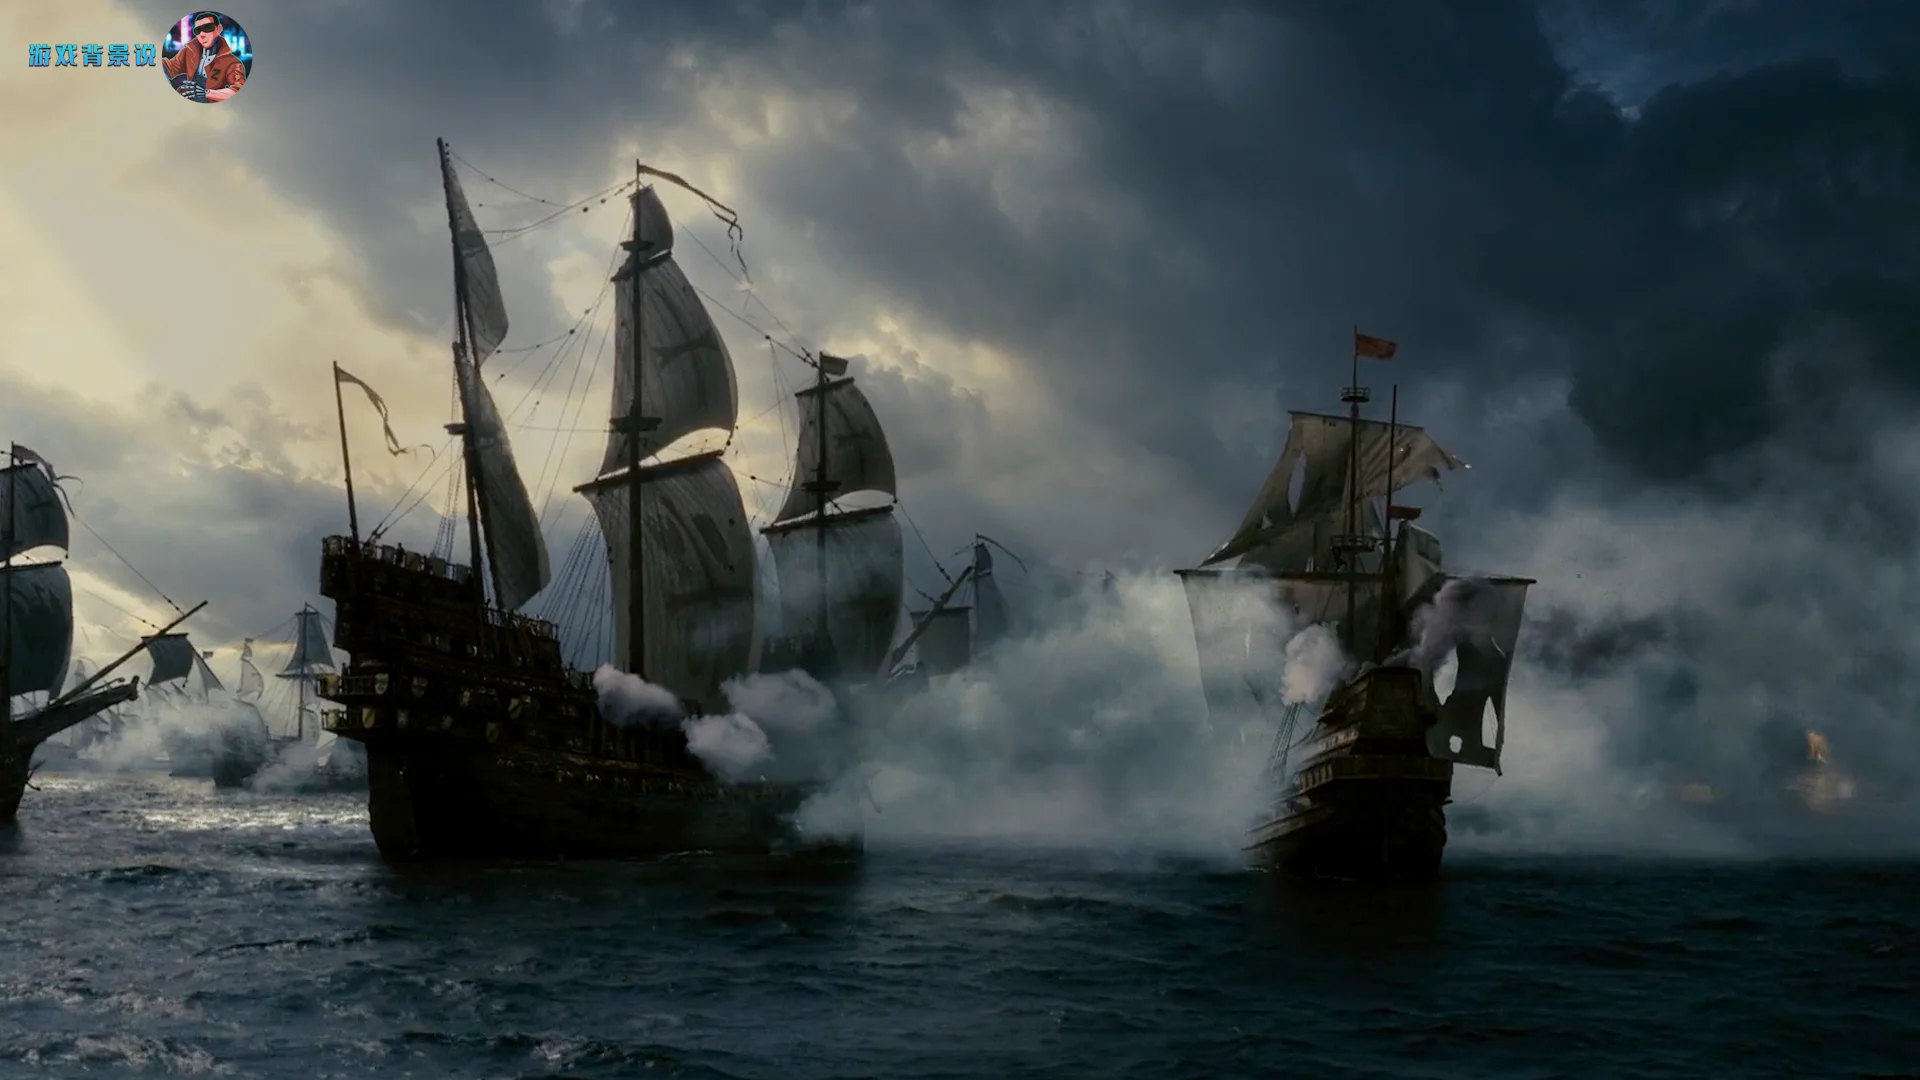 电影《伊丽莎白2:黄金时代》所还原的无敌舰队之战